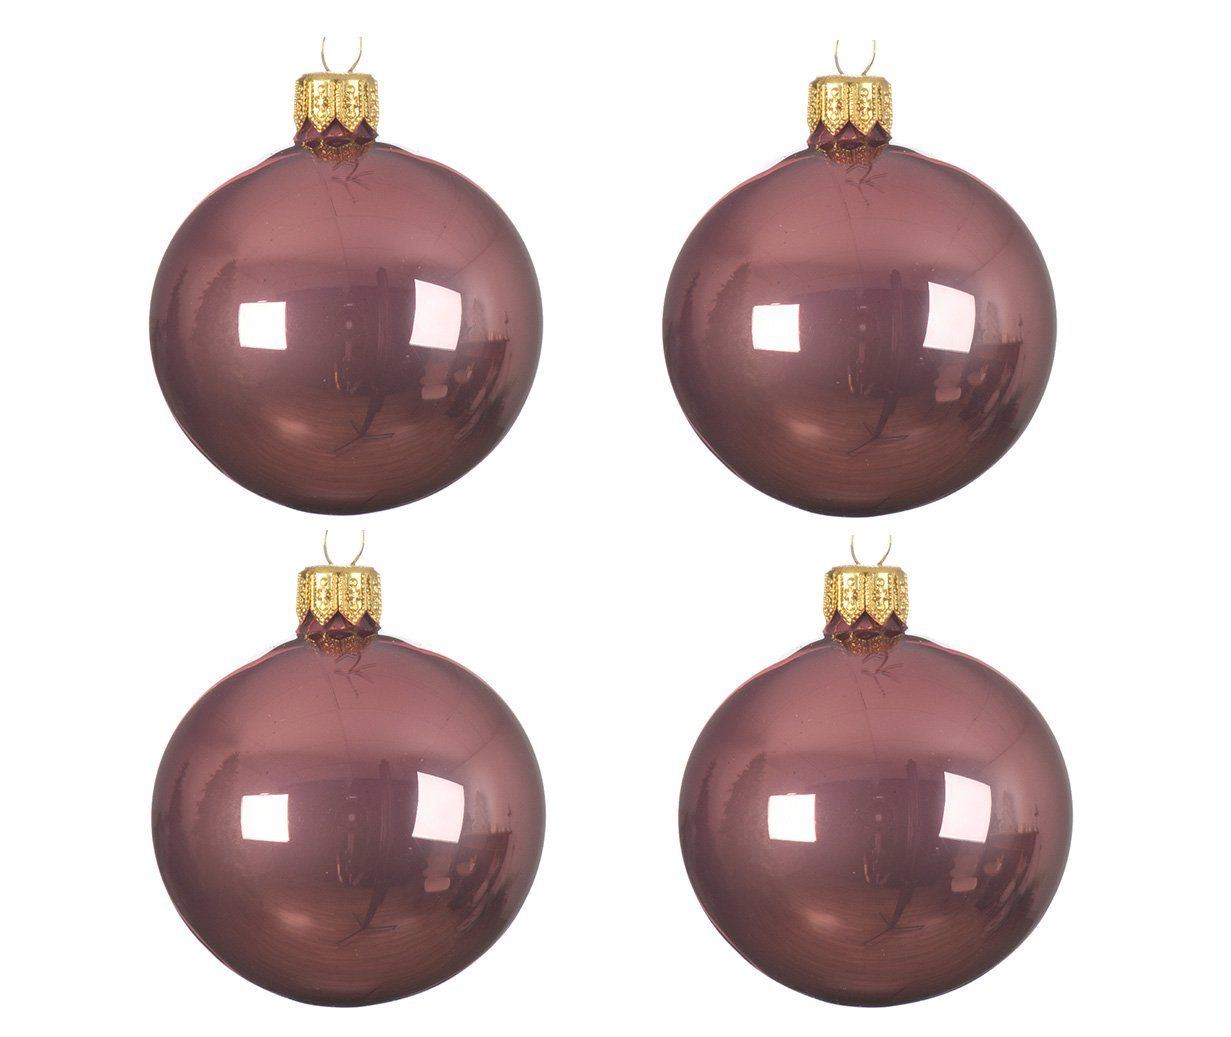 Decoris season decorations Christbaumschmuck, Weihnachtskugeln Glas 10cm mundgeblasen 4er Box - Samtpink glänzend